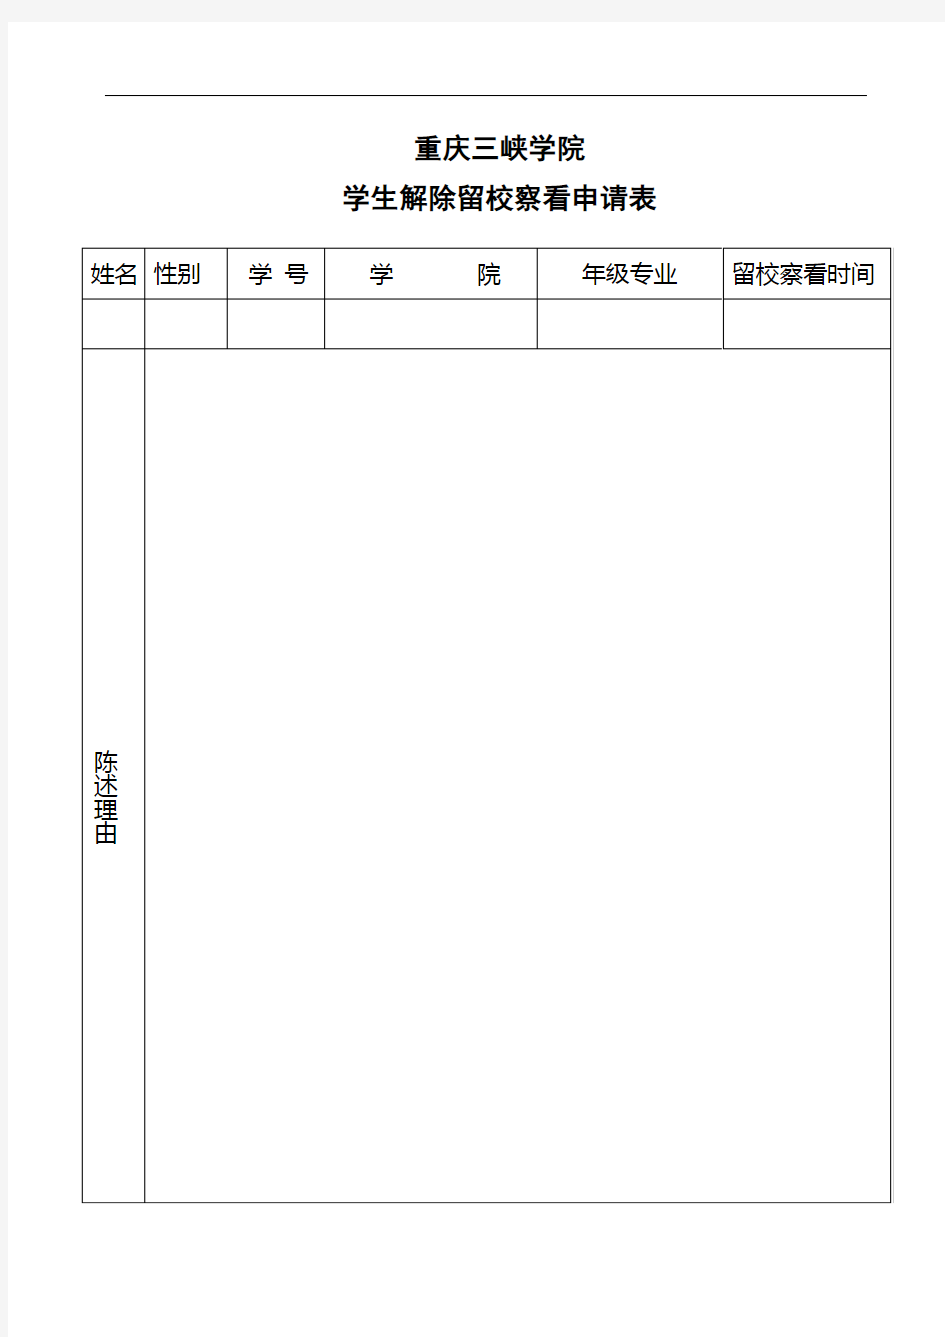 重庆三峡学院学生解除留校察看申请表